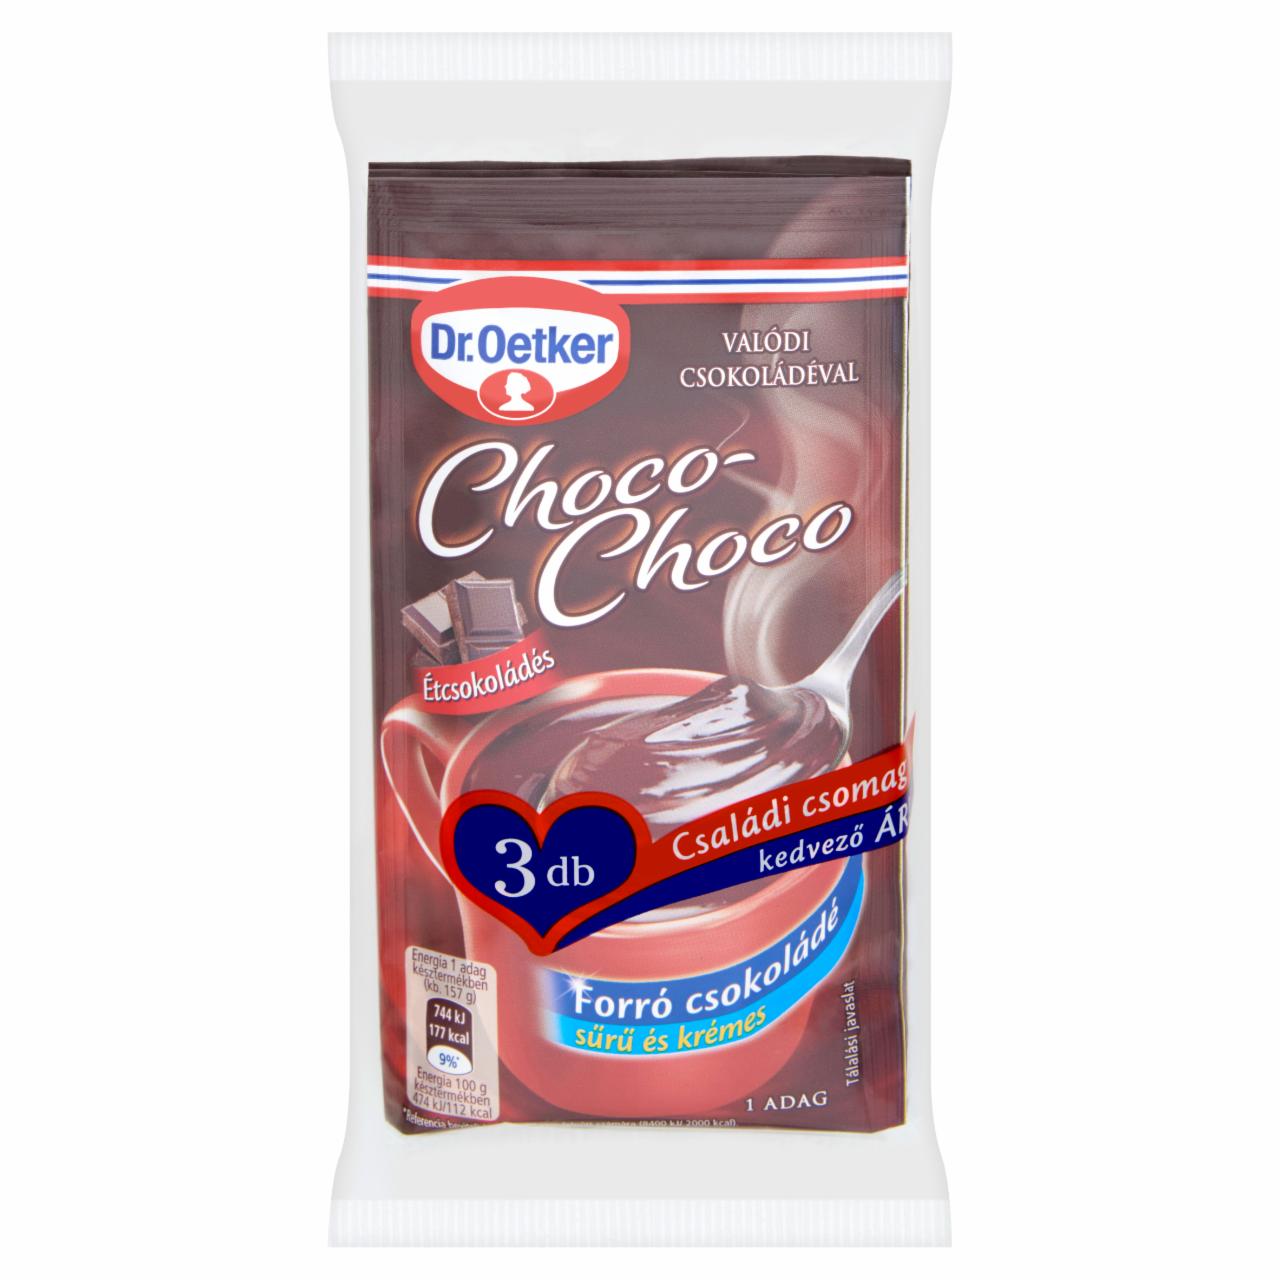 Képek - Dr. Oetker Choco-Choco étcsokoládés forró csokoládé italpor 32 g